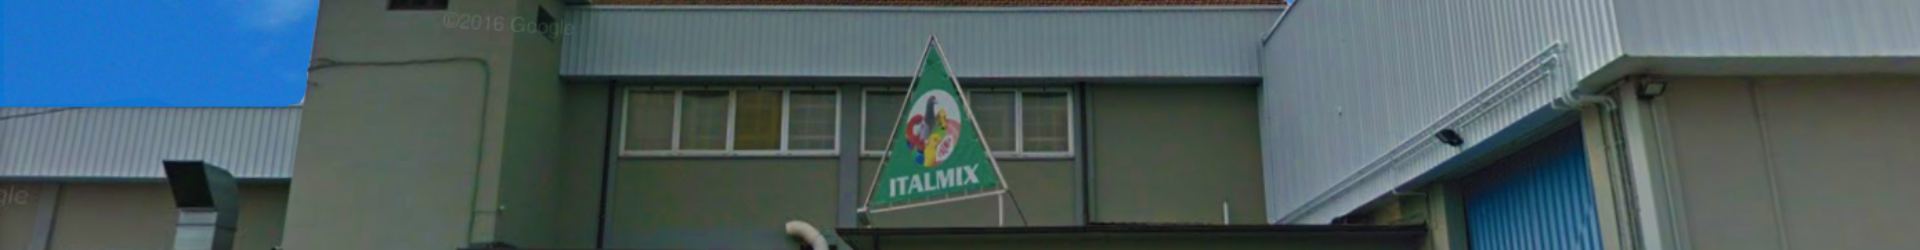 Italmix - Dal 1979 selezioniamo qualità